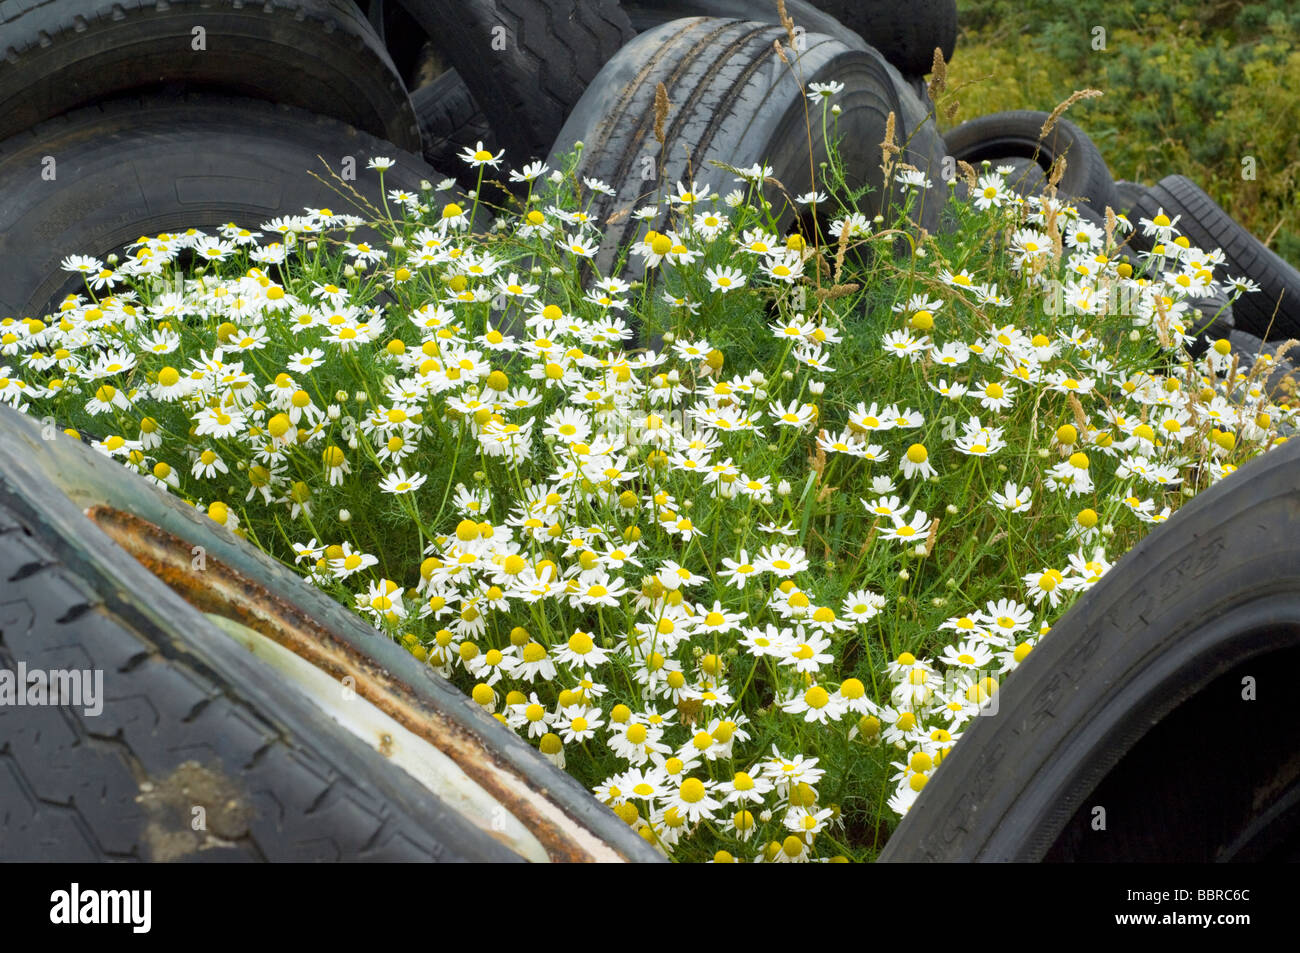 Scentless Mayweed, Tripleurospermum inodorum, growing among piles of abandoned vehicle tyres. Stock Photo